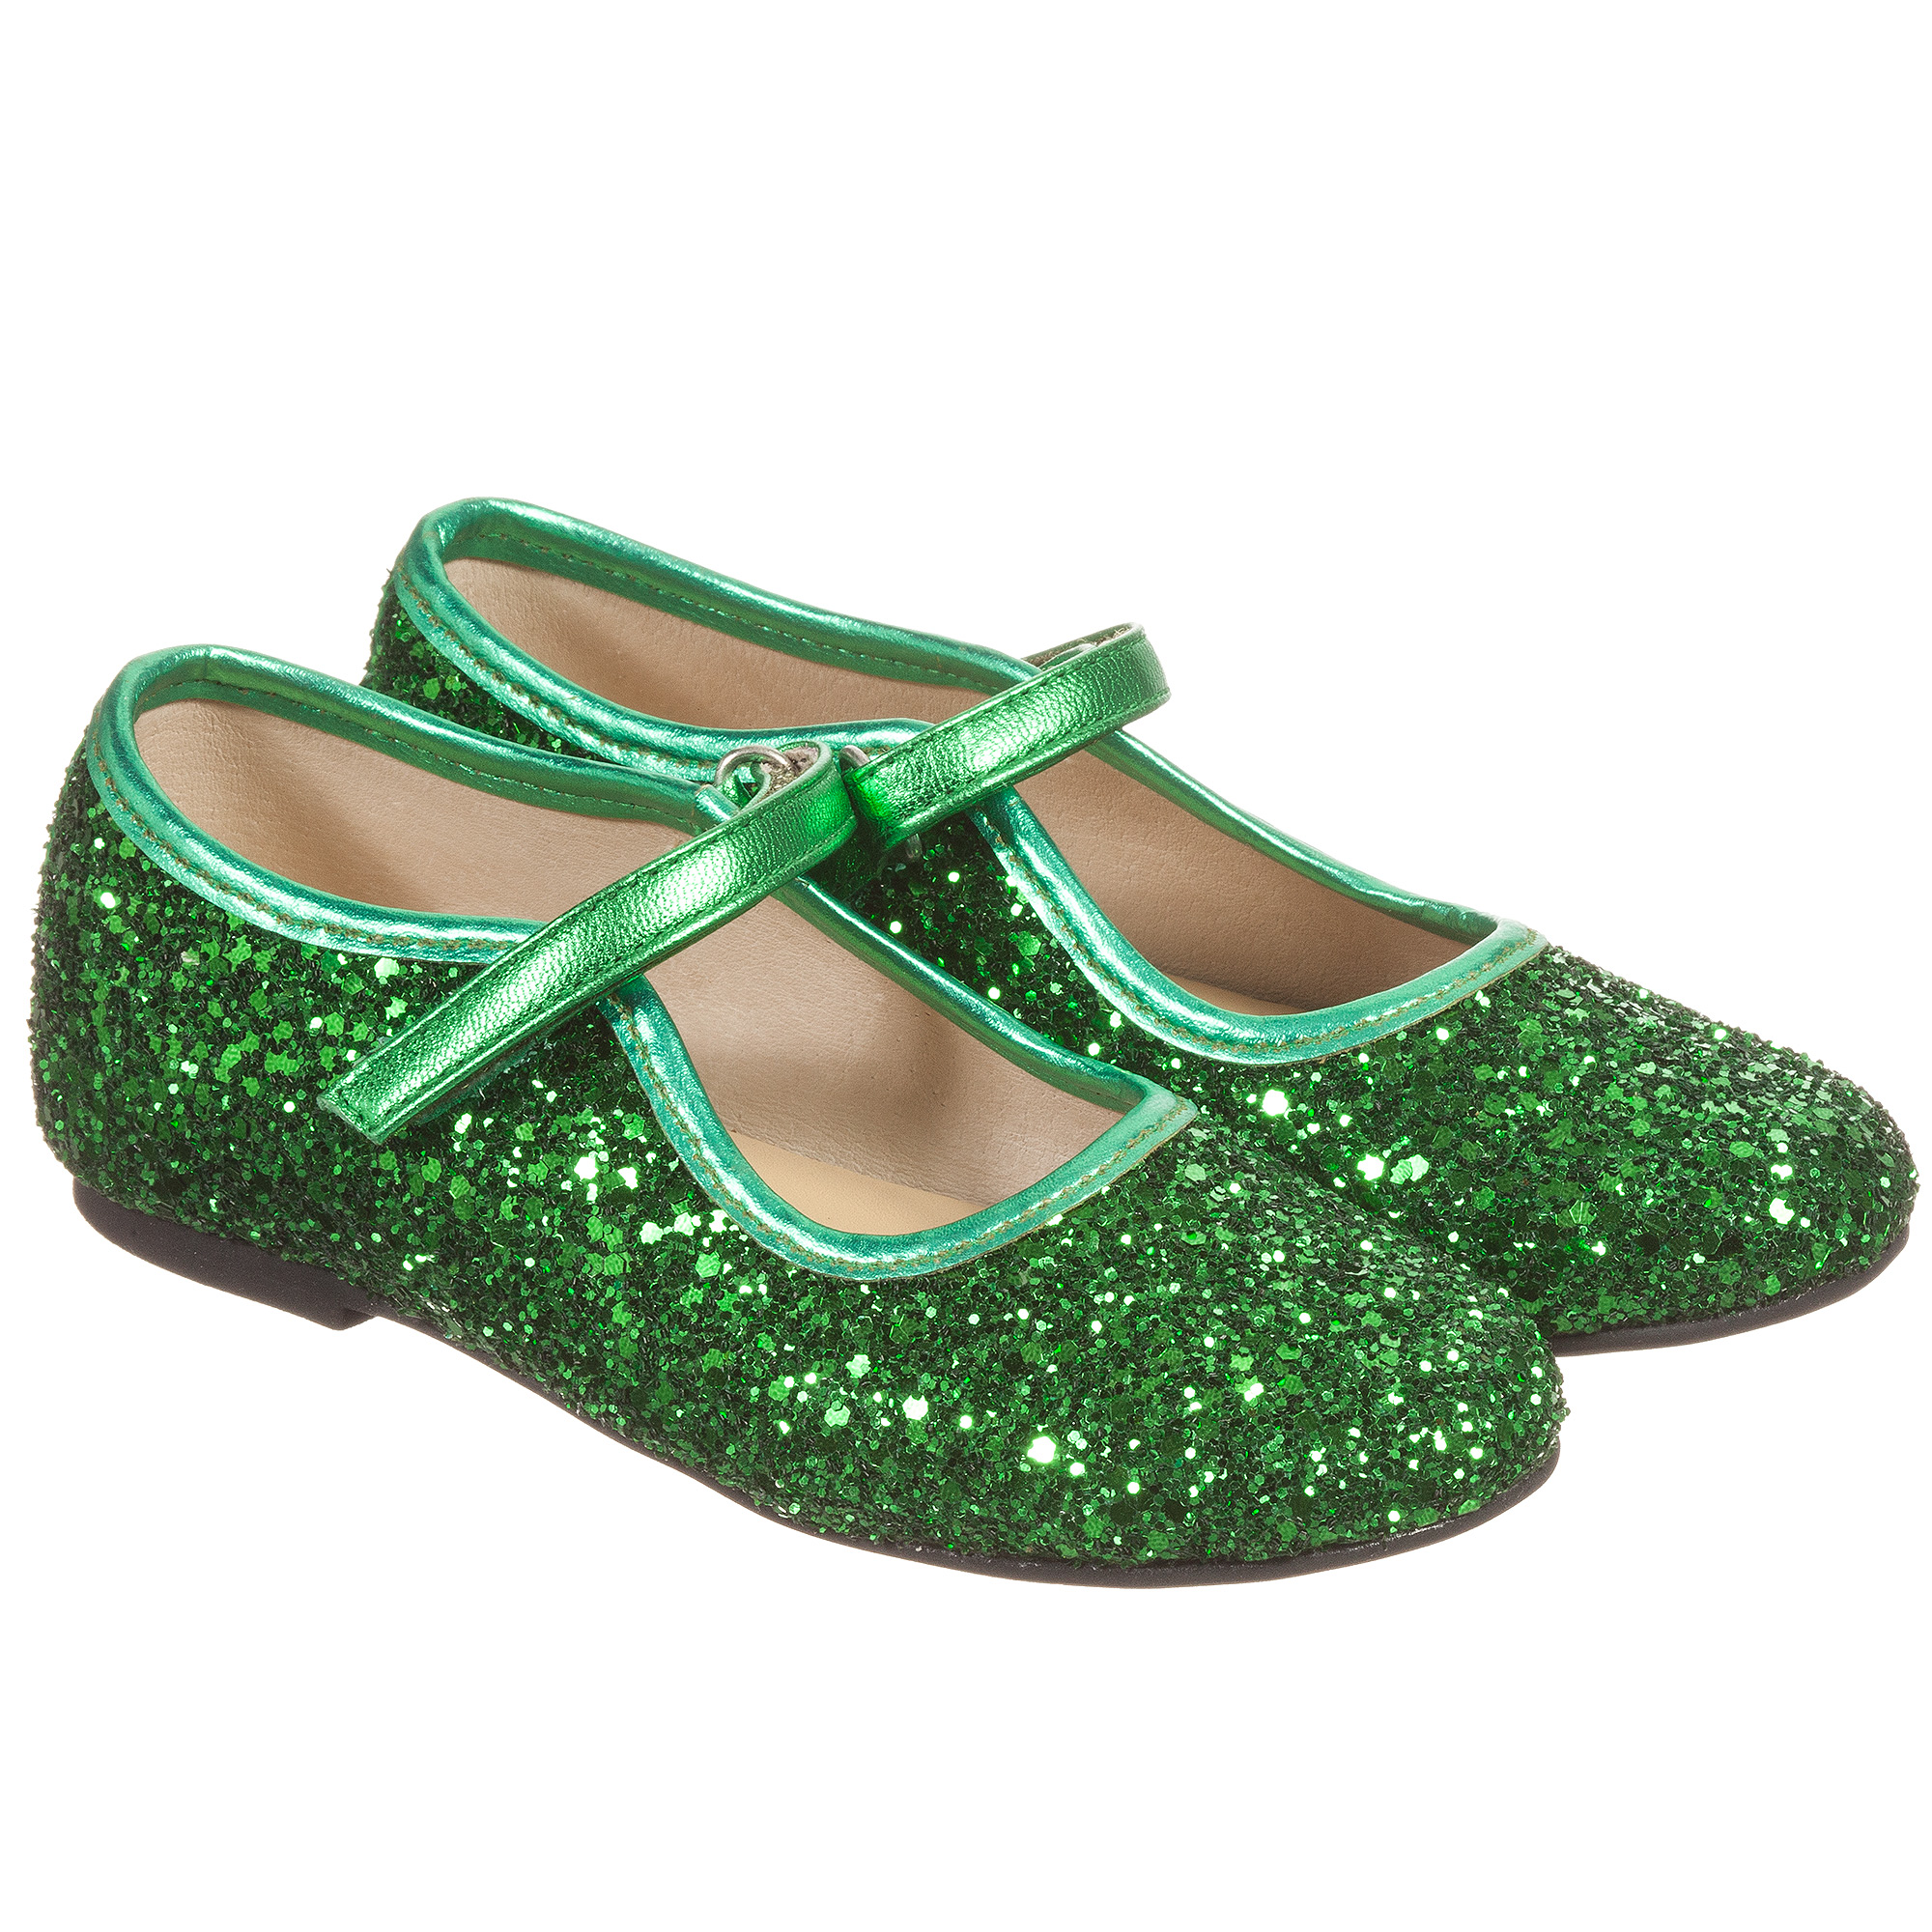 girls green shoes